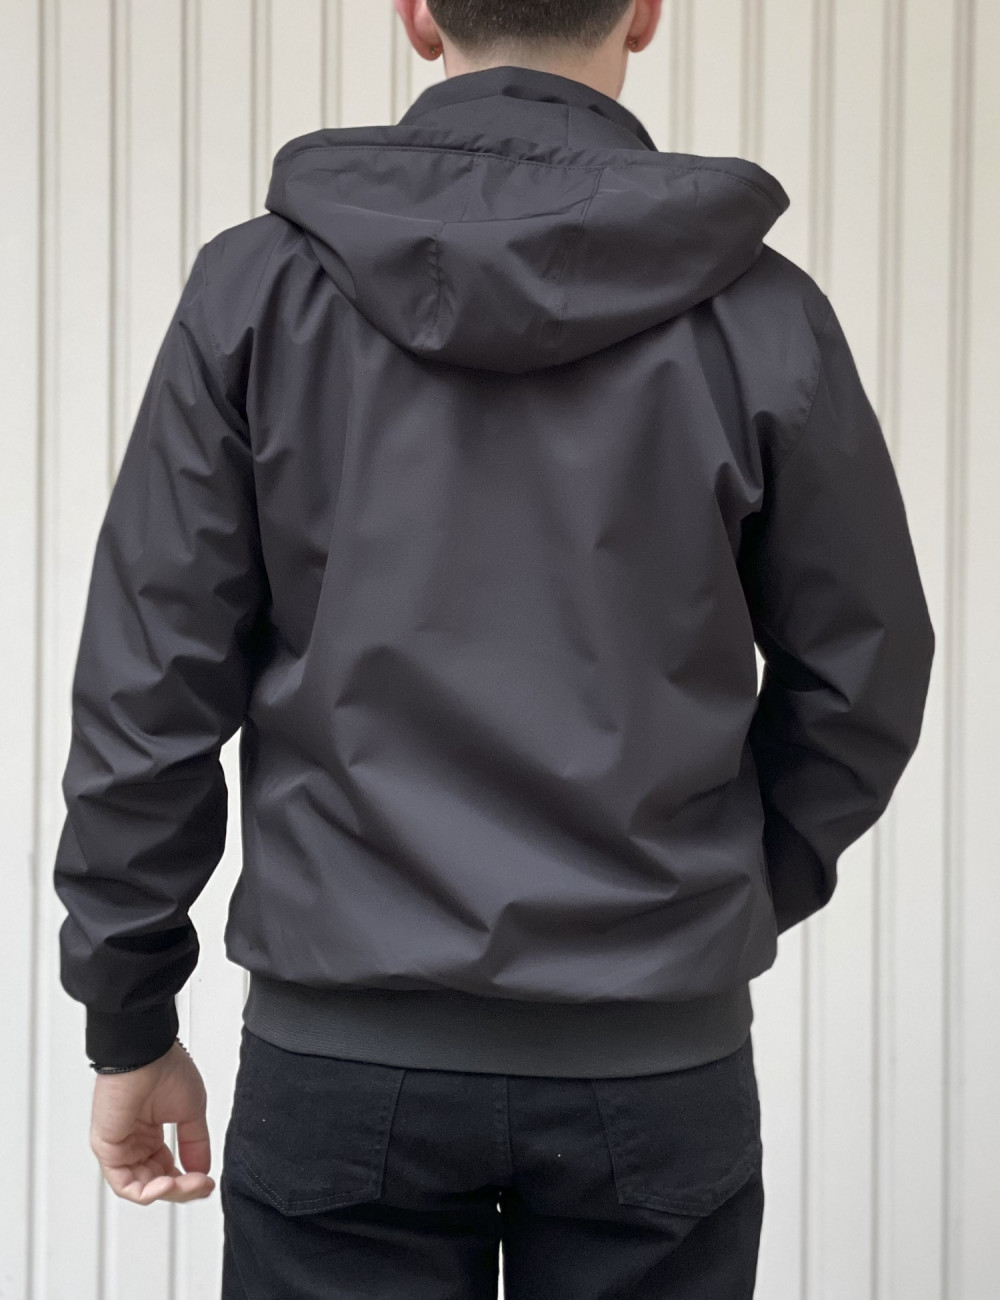 Ανδρικό μαύρο Jacket με κουκούλα WS8032